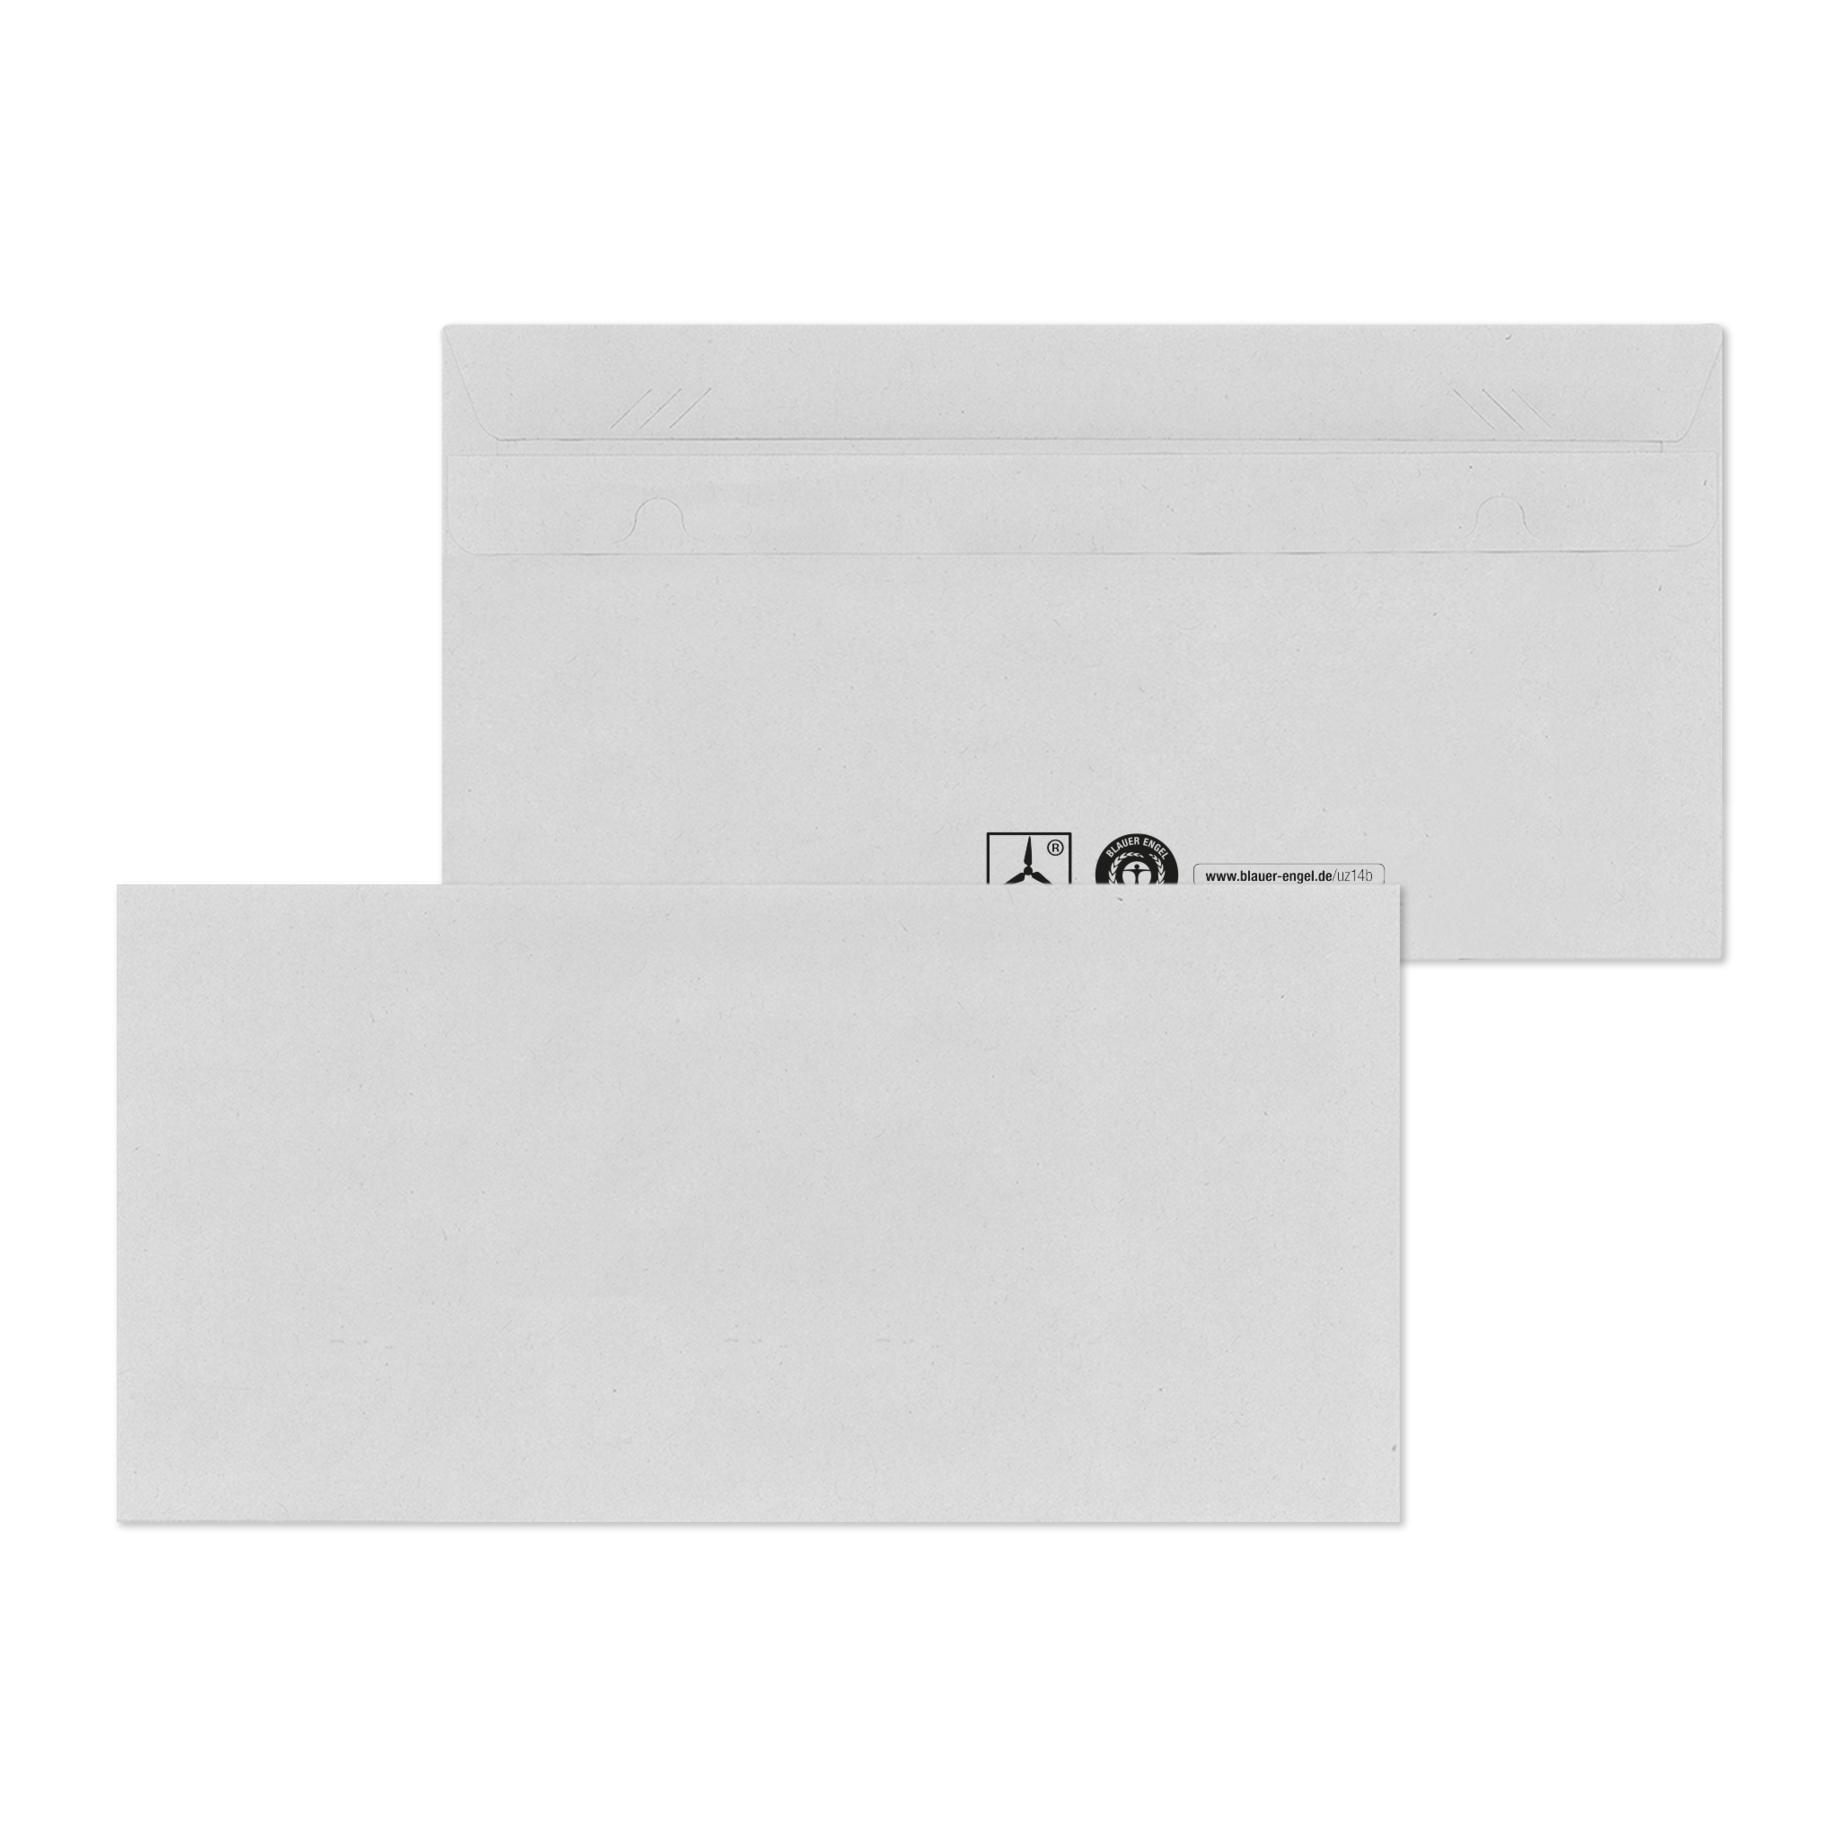 Briefumschlag DIN lang mit Sicherheitsschlitze